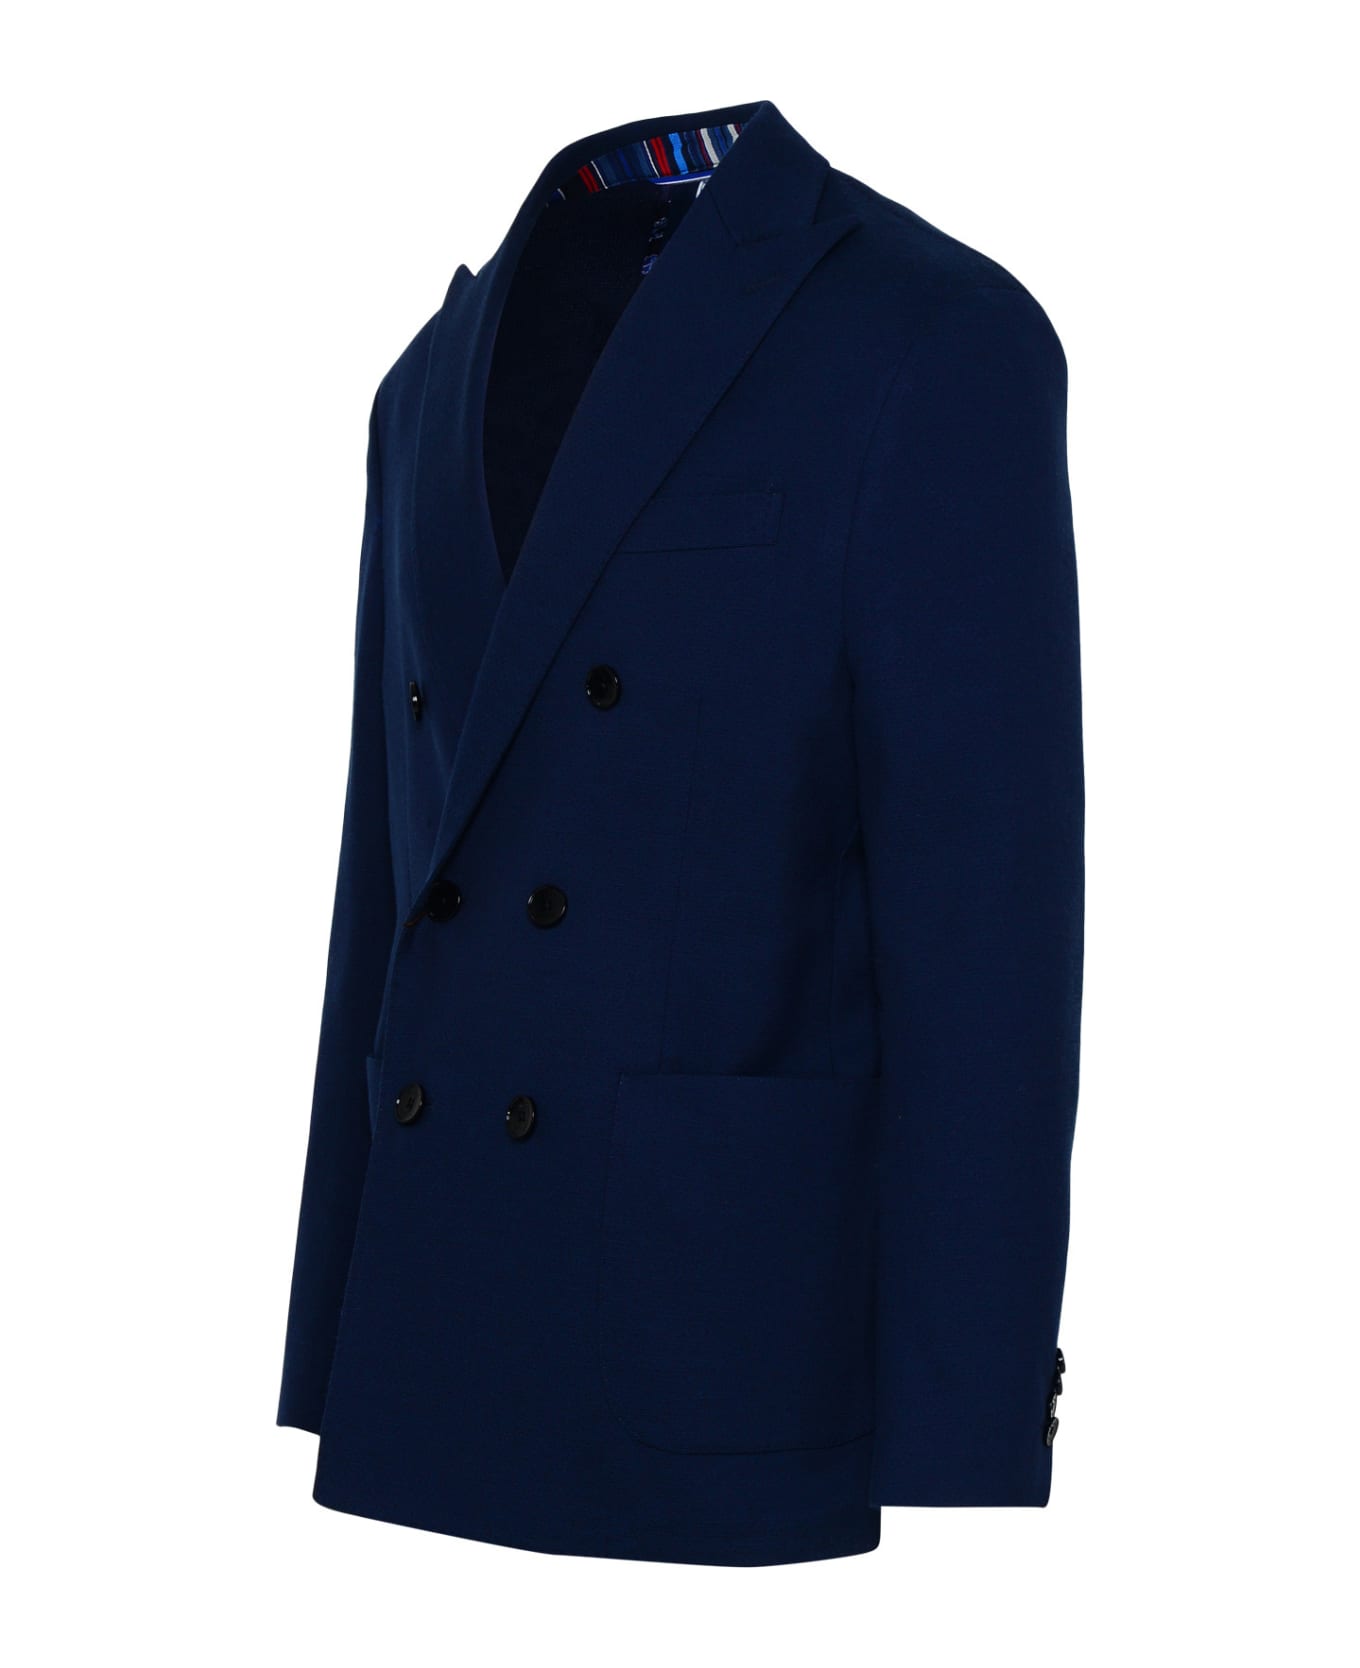 Etro Blue Cotton Blend Blazer Jacket - Blue